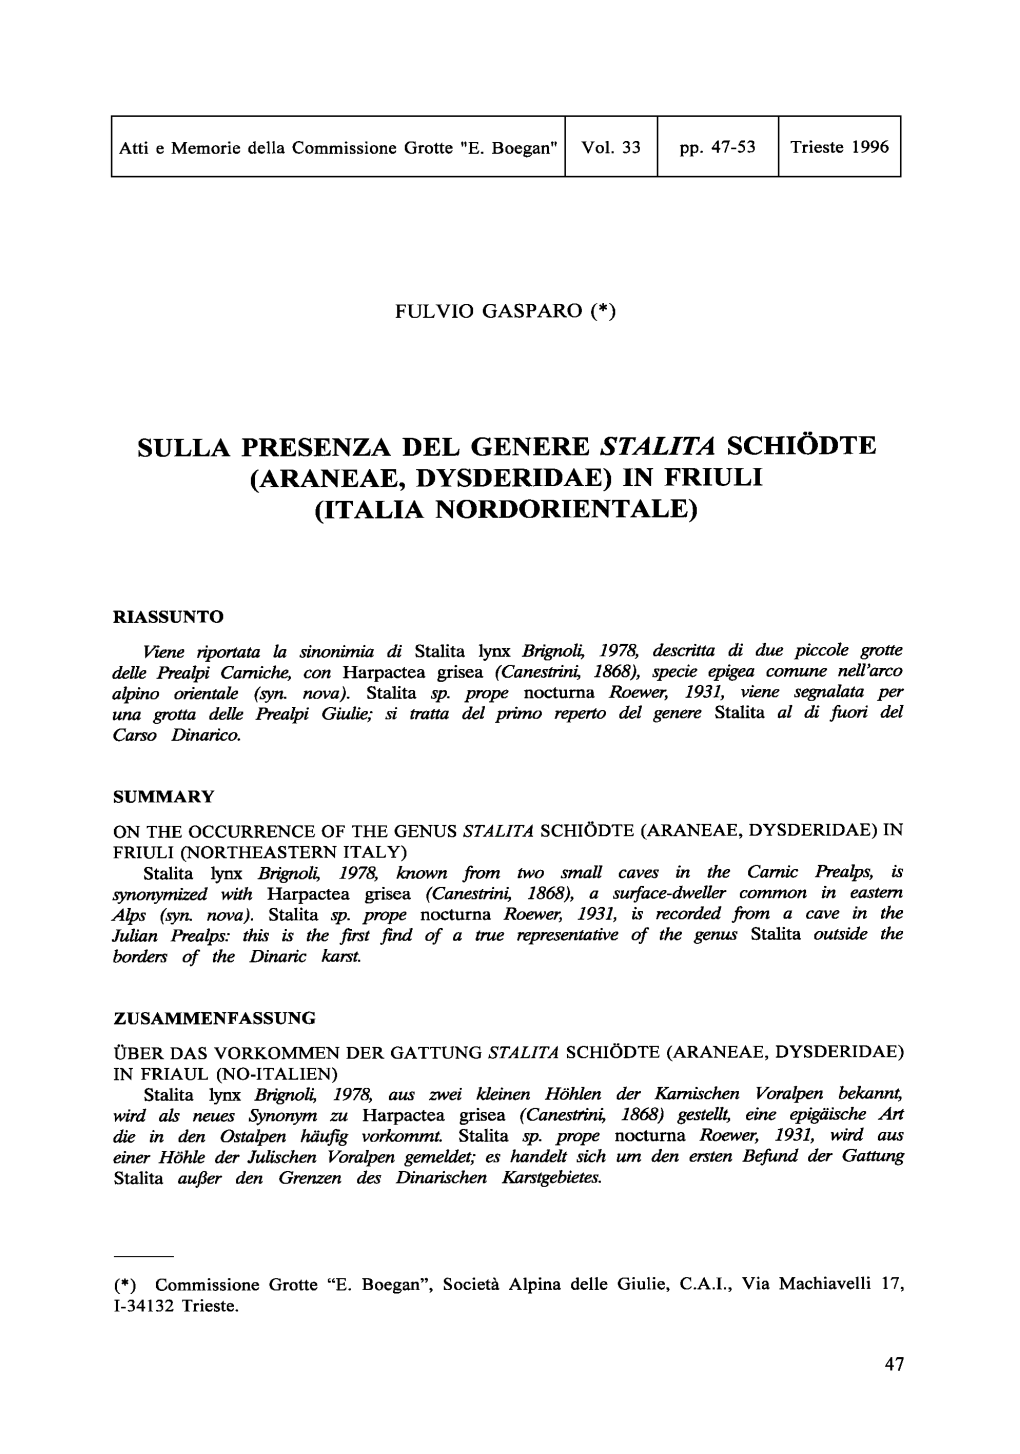 Sulla Presenza Del Genere Stalita Schiodte (Araneae, Dysderidae) in Friuli (Italia Nordorientale)